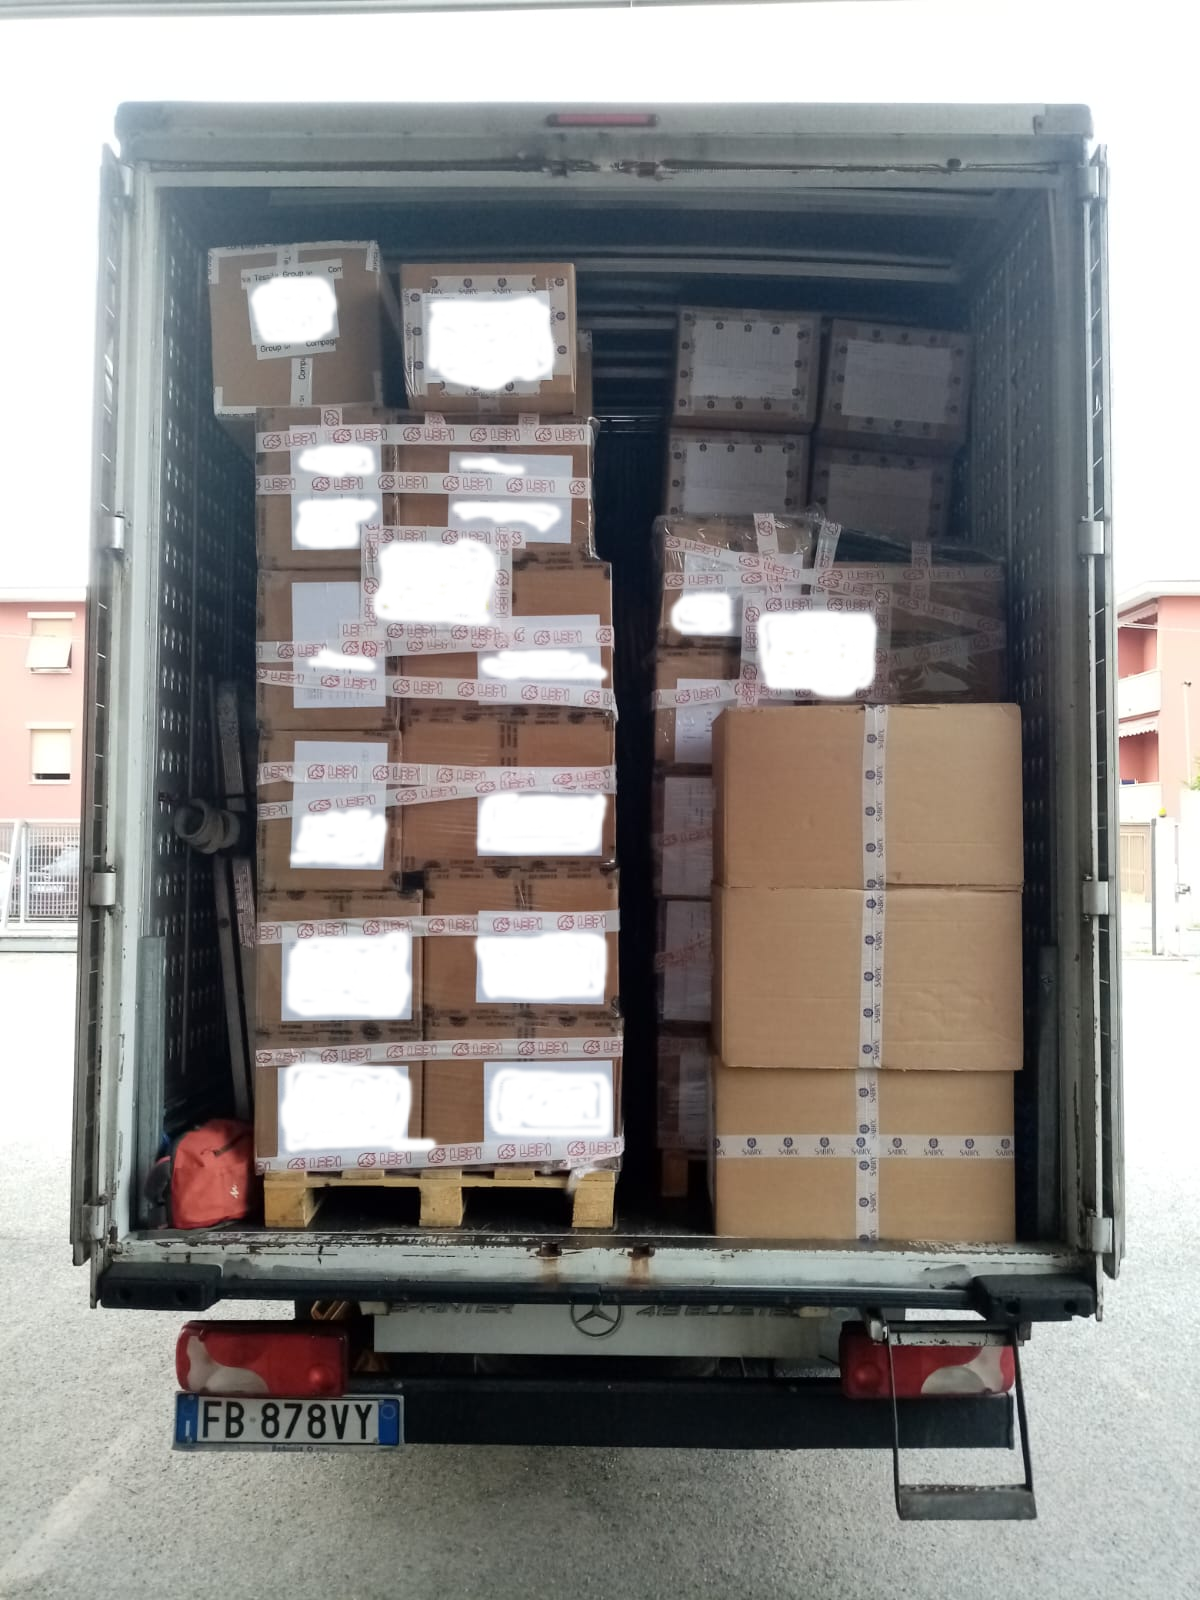 un camion pieno di scatole è parcheggiato con la targa fb878vy